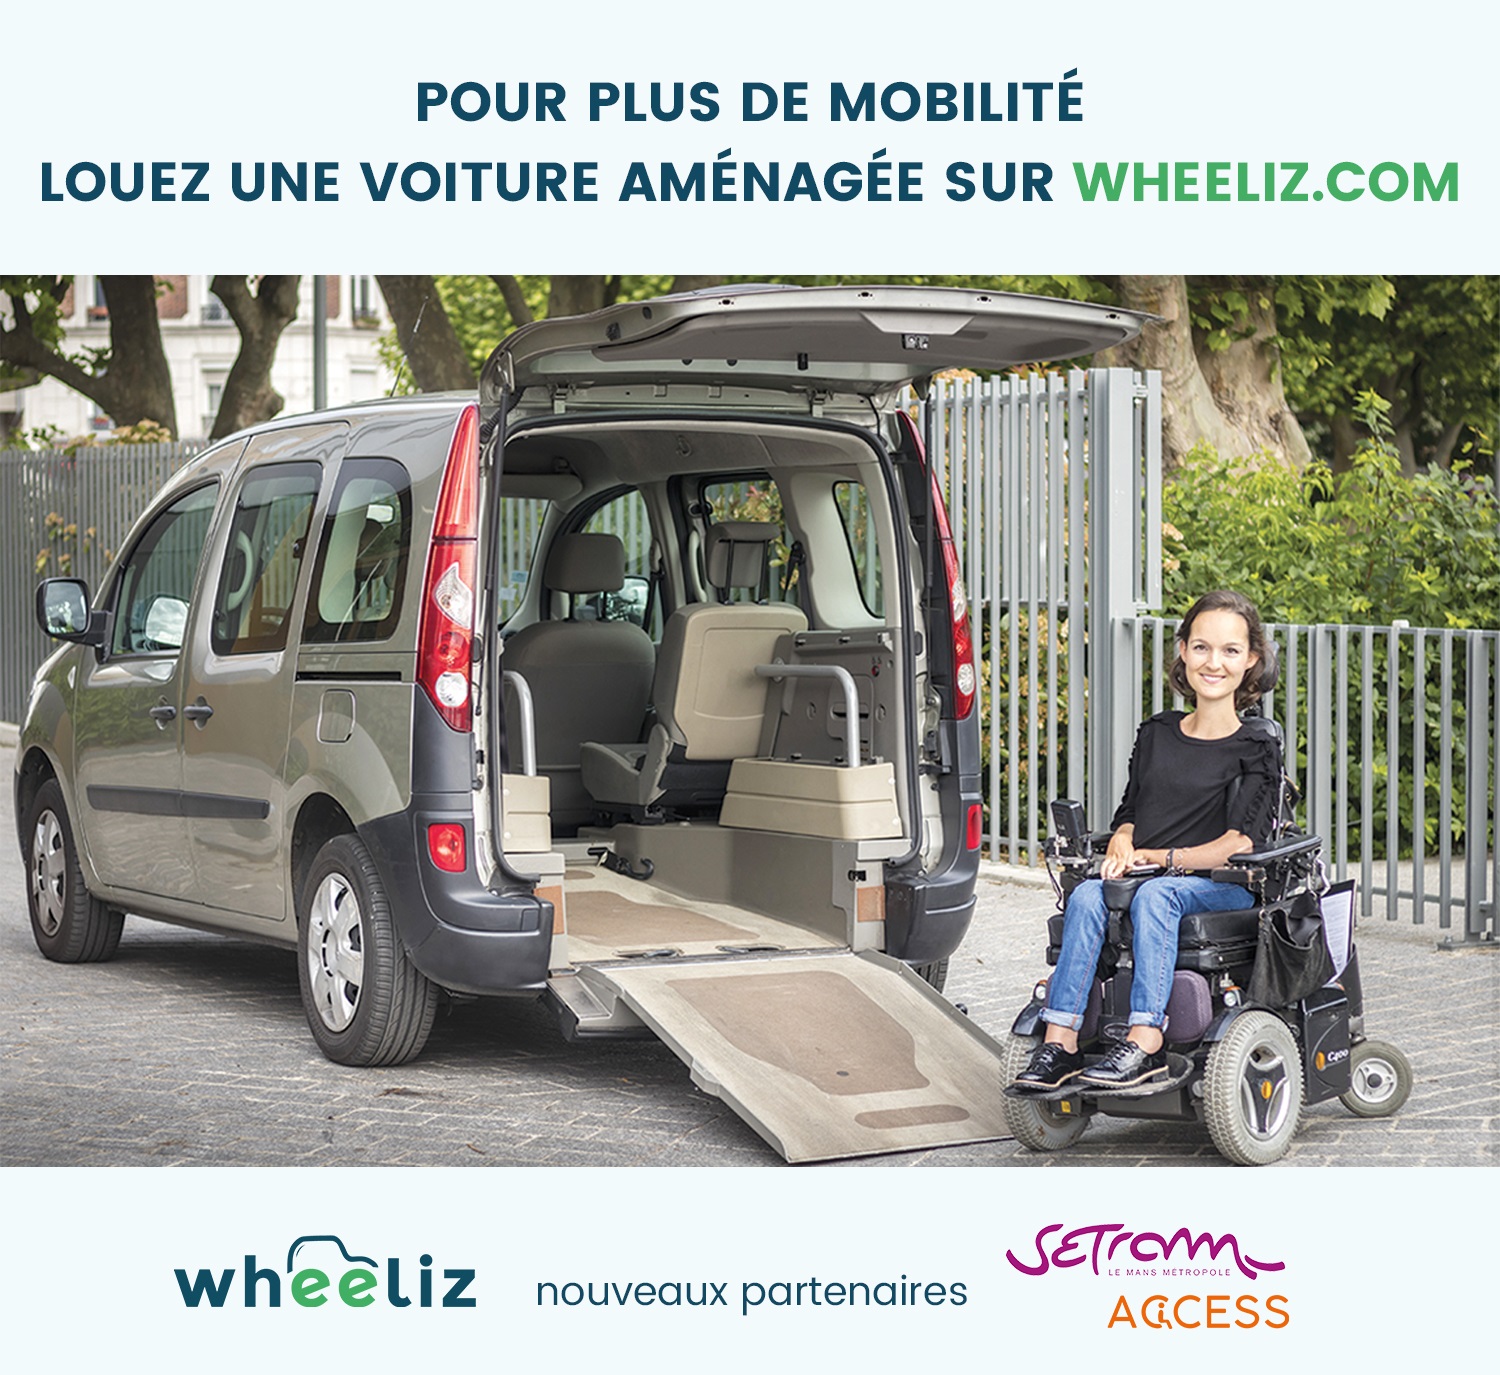 Pour plus de mobilité, louez une voiture aménagée sur wheeliz.com (partenaire Setram Access)